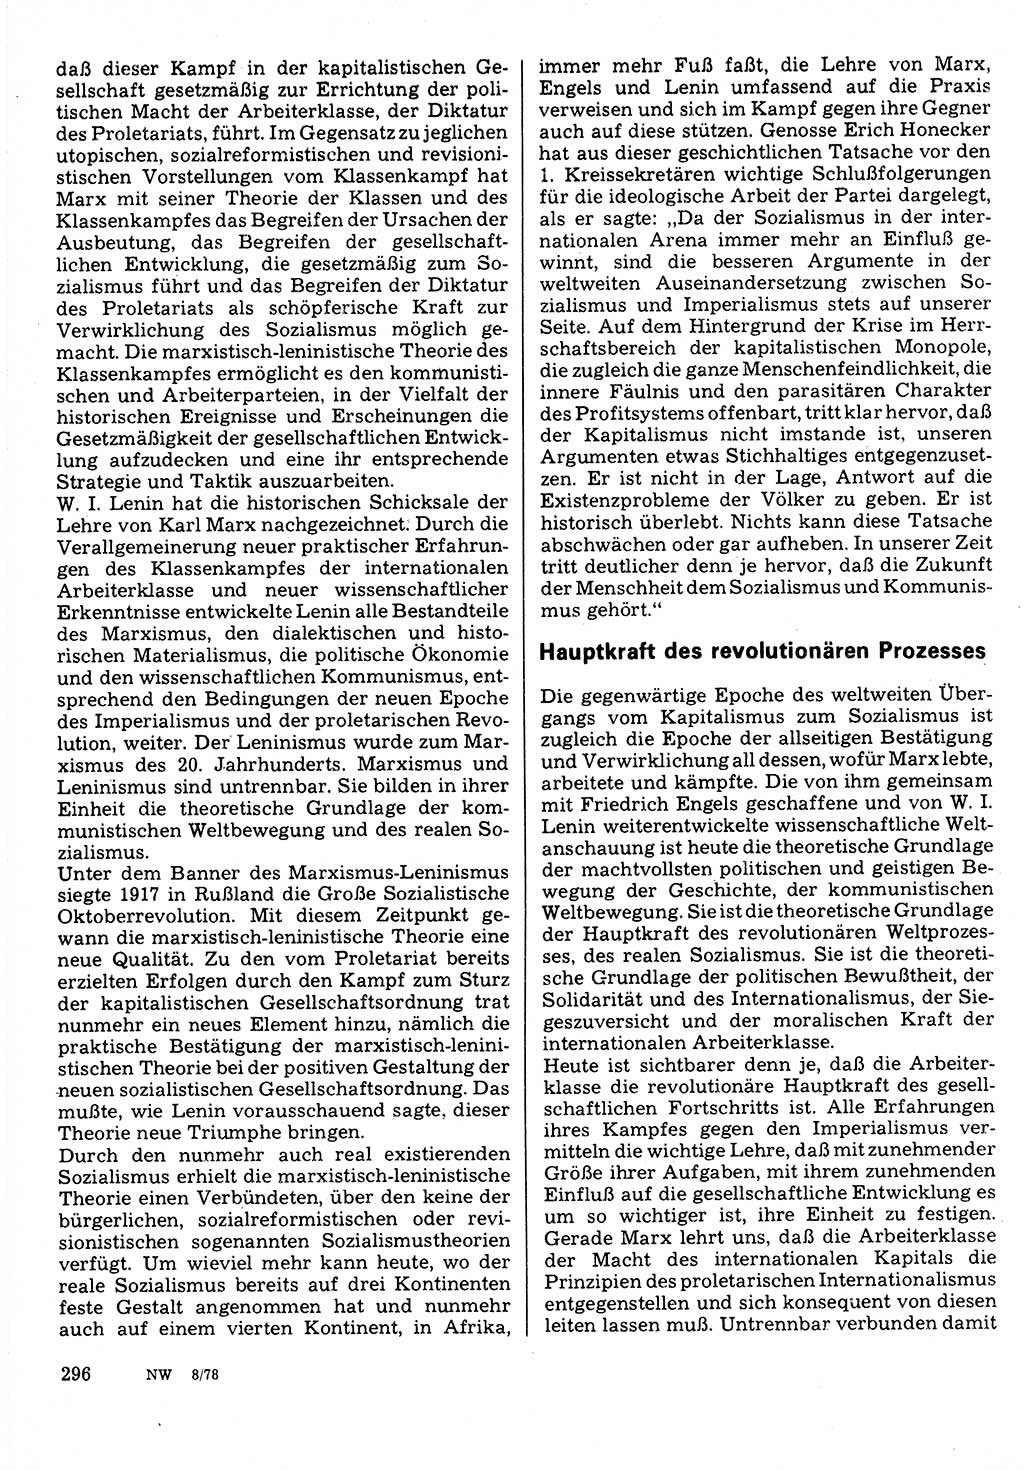 Neuer Weg (NW), Organ des Zentralkomitees (ZK) der SED (Sozialistische Einheitspartei Deutschlands) für Fragen des Parteilebens, 33. Jahrgang [Deutsche Demokratische Republik (DDR)] 1978, Seite 296 (NW ZK SED DDR 1978, S. 296)